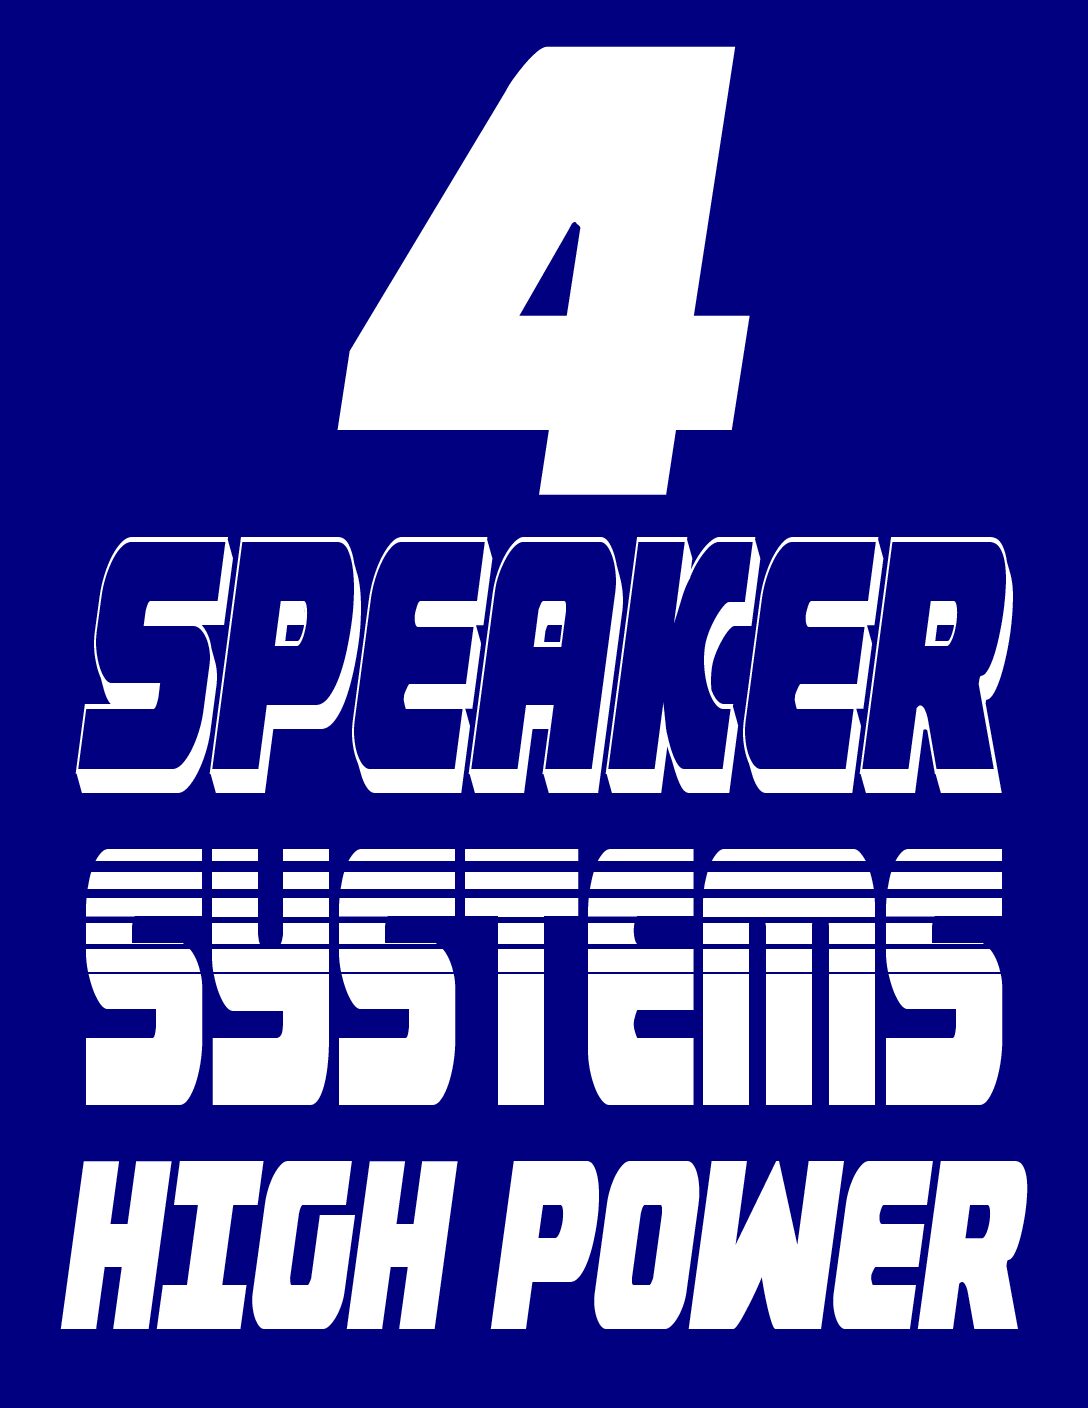 RANGER 4 SPEAKER SYSTEM HIGH POWER 19-PRESENT